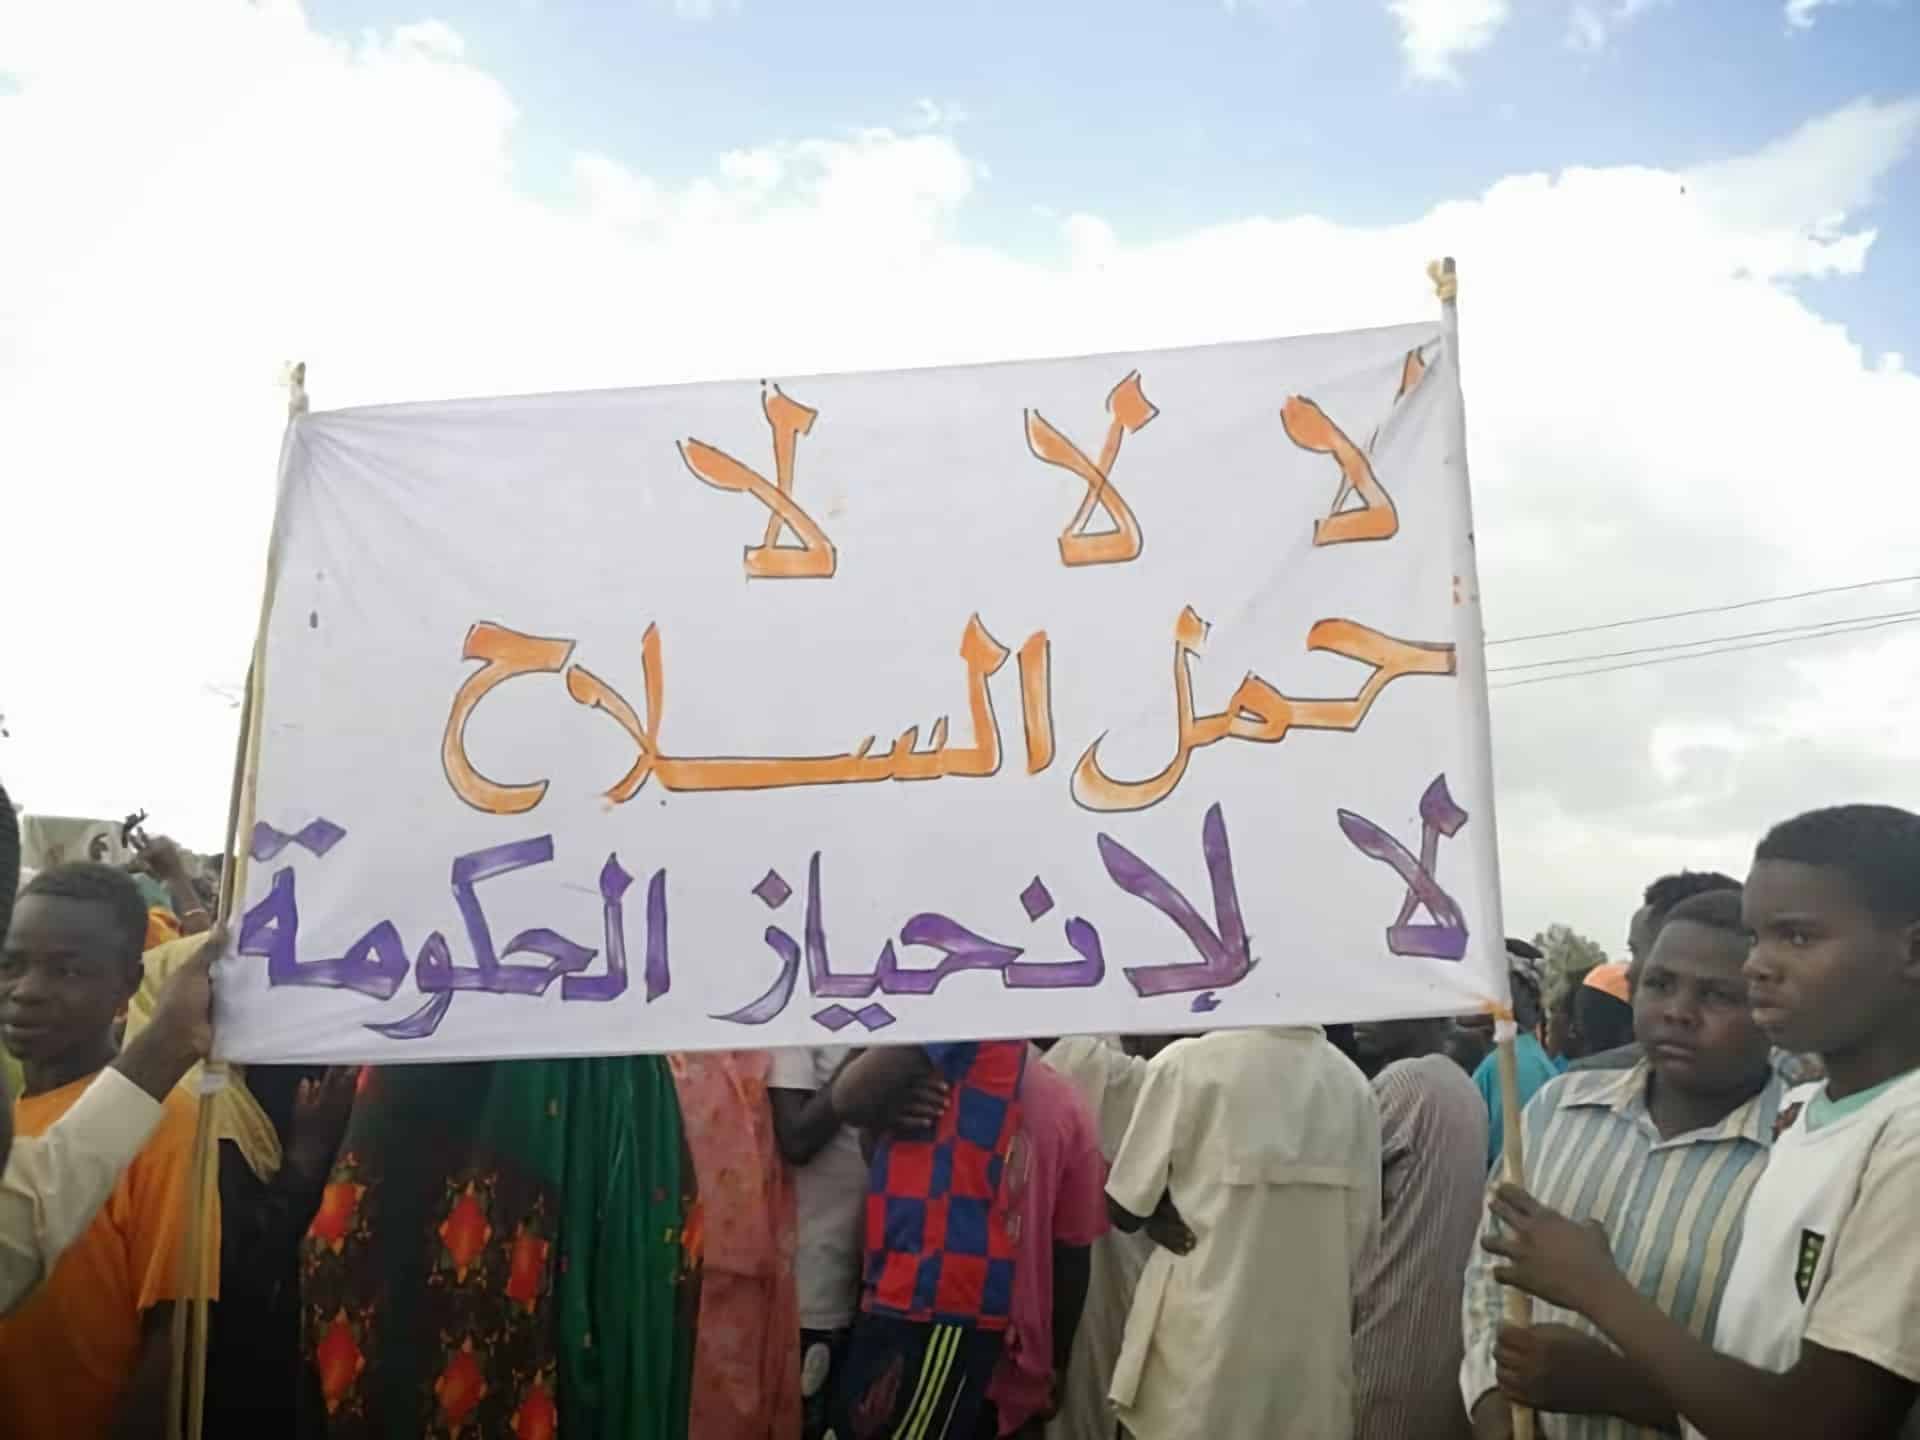 السودان: معتصمو "نرتتي" يطالبون بحضور وفد رئاسي لتسليمه مطالبهم